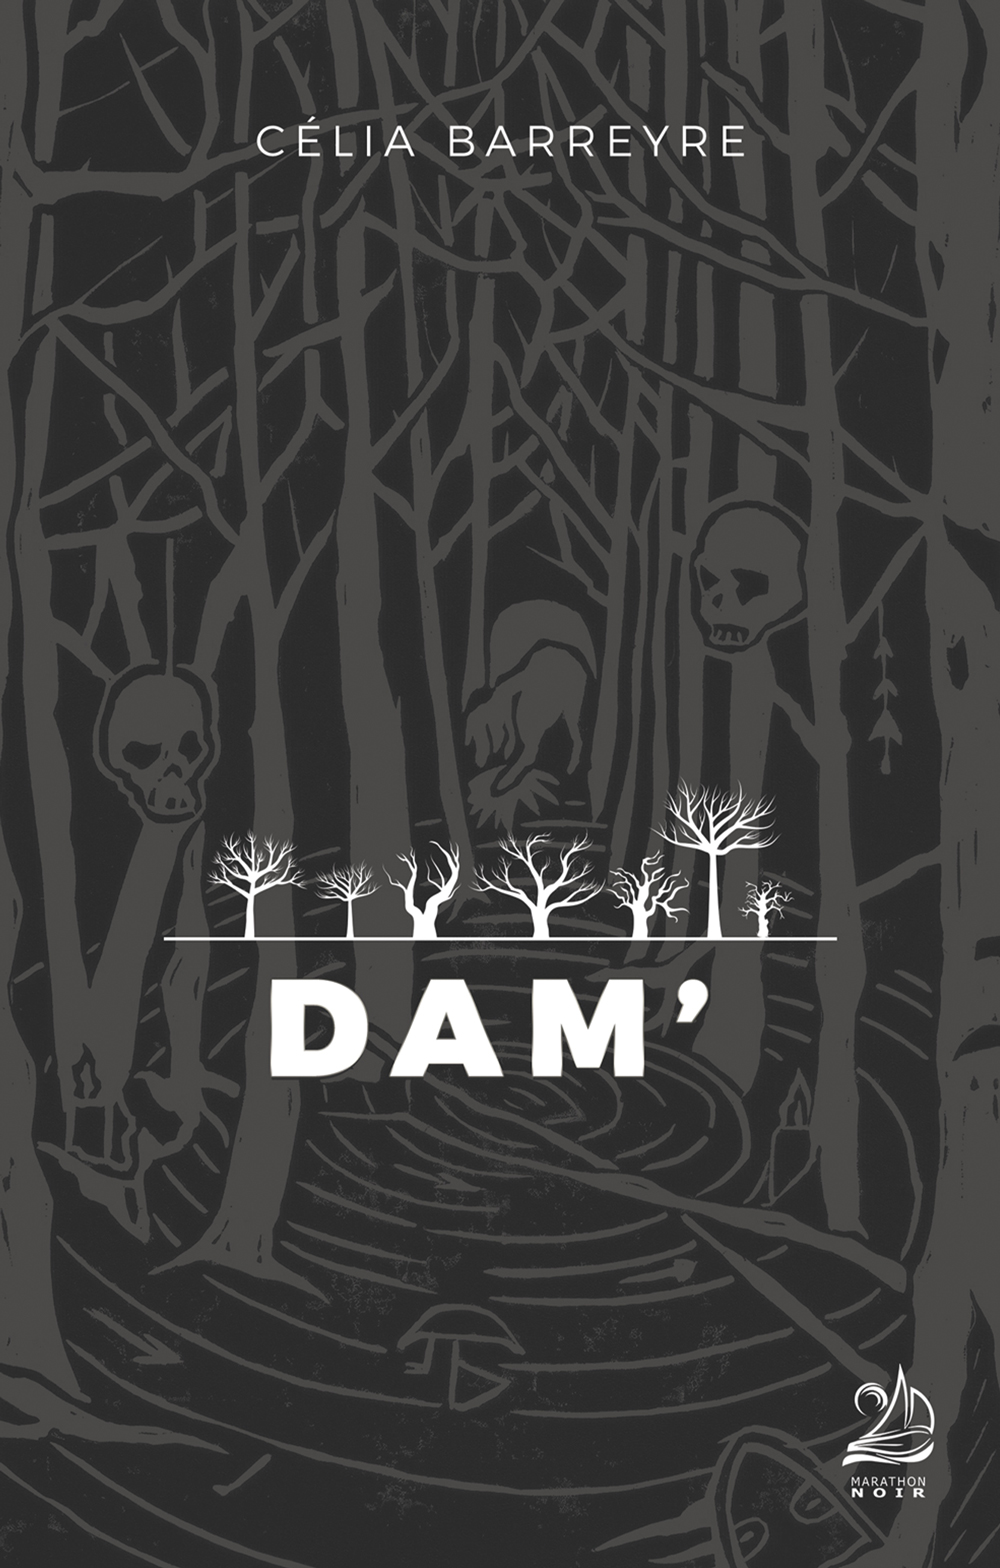 Couverture DAM', illustration d'une forêt d'arbres morts en gris et noir, représentation effrayante avec des cranes pendusCouverture DAM', illustration d'une forêt d'arbres morts en gris et noir, représentation effrayante avec des cranes pendus